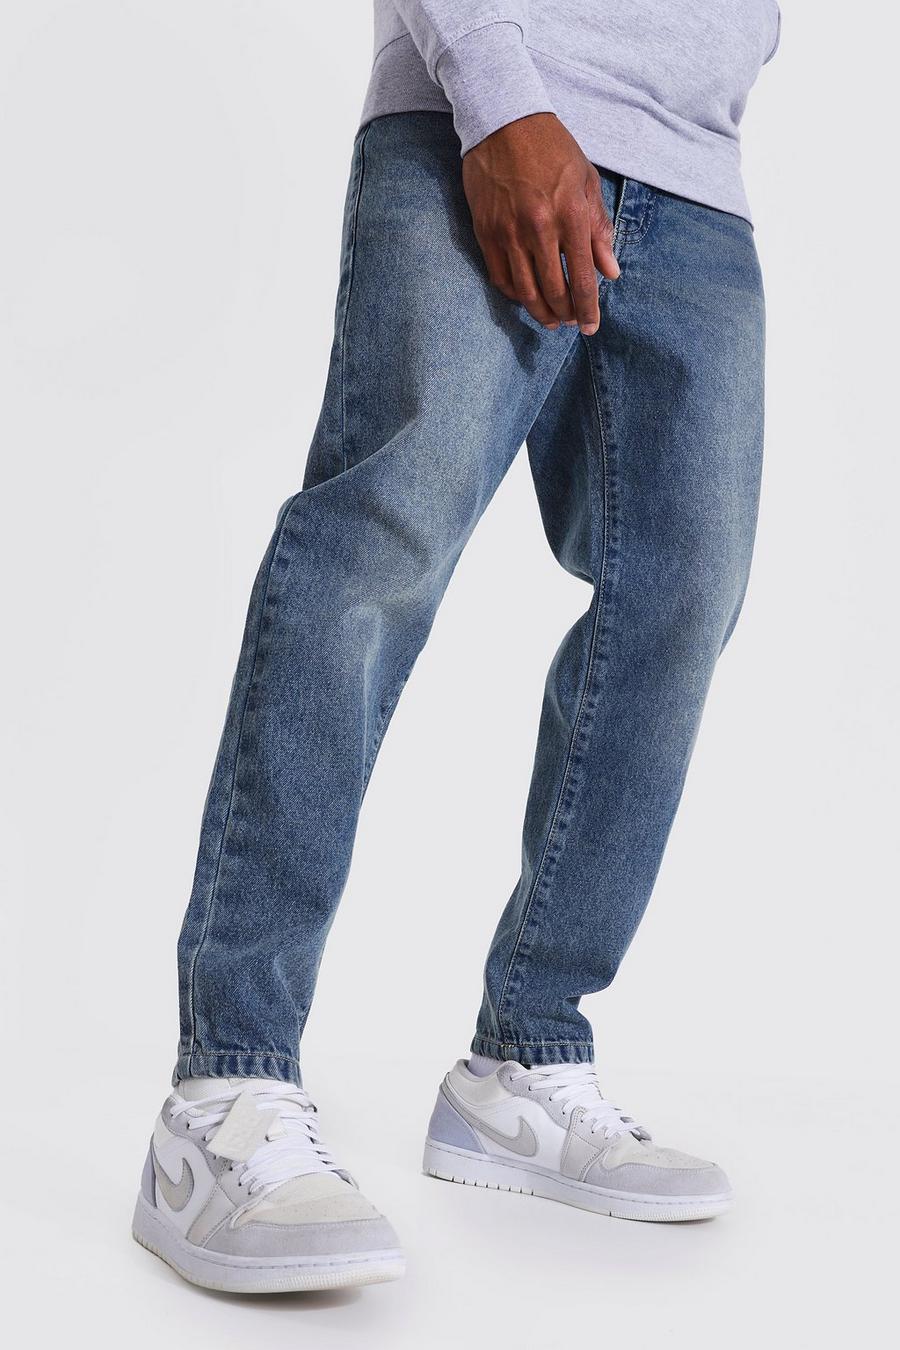 כחול וינטג' ג'ינס מבד קשיח בגזרת קרסול צרה